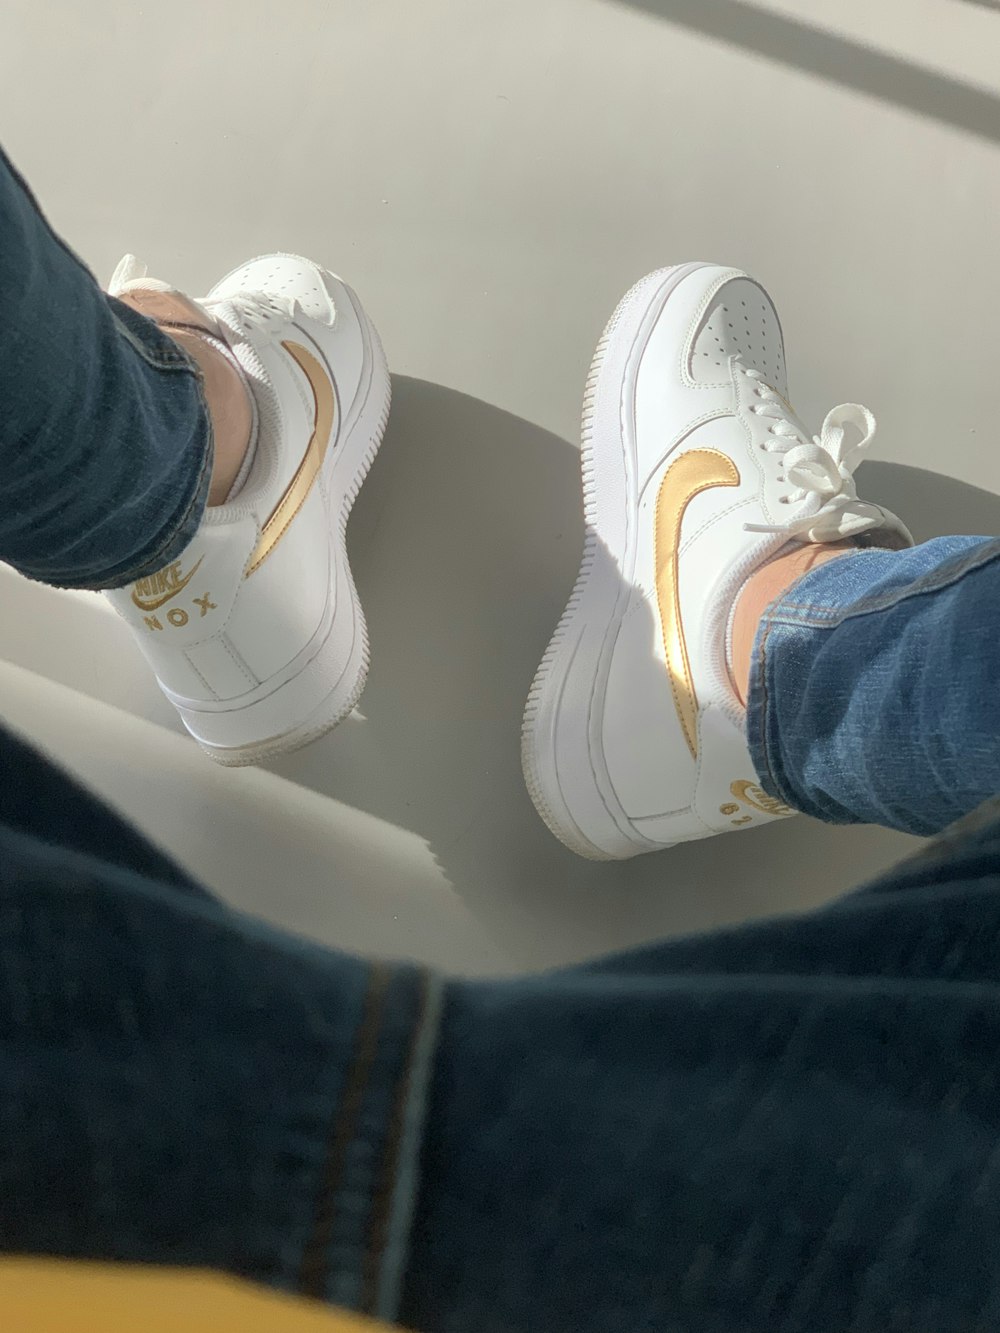 Foto Zapatillas Nike Air Force One blancas y doradas – Imagen Gris gratis  en Unsplash